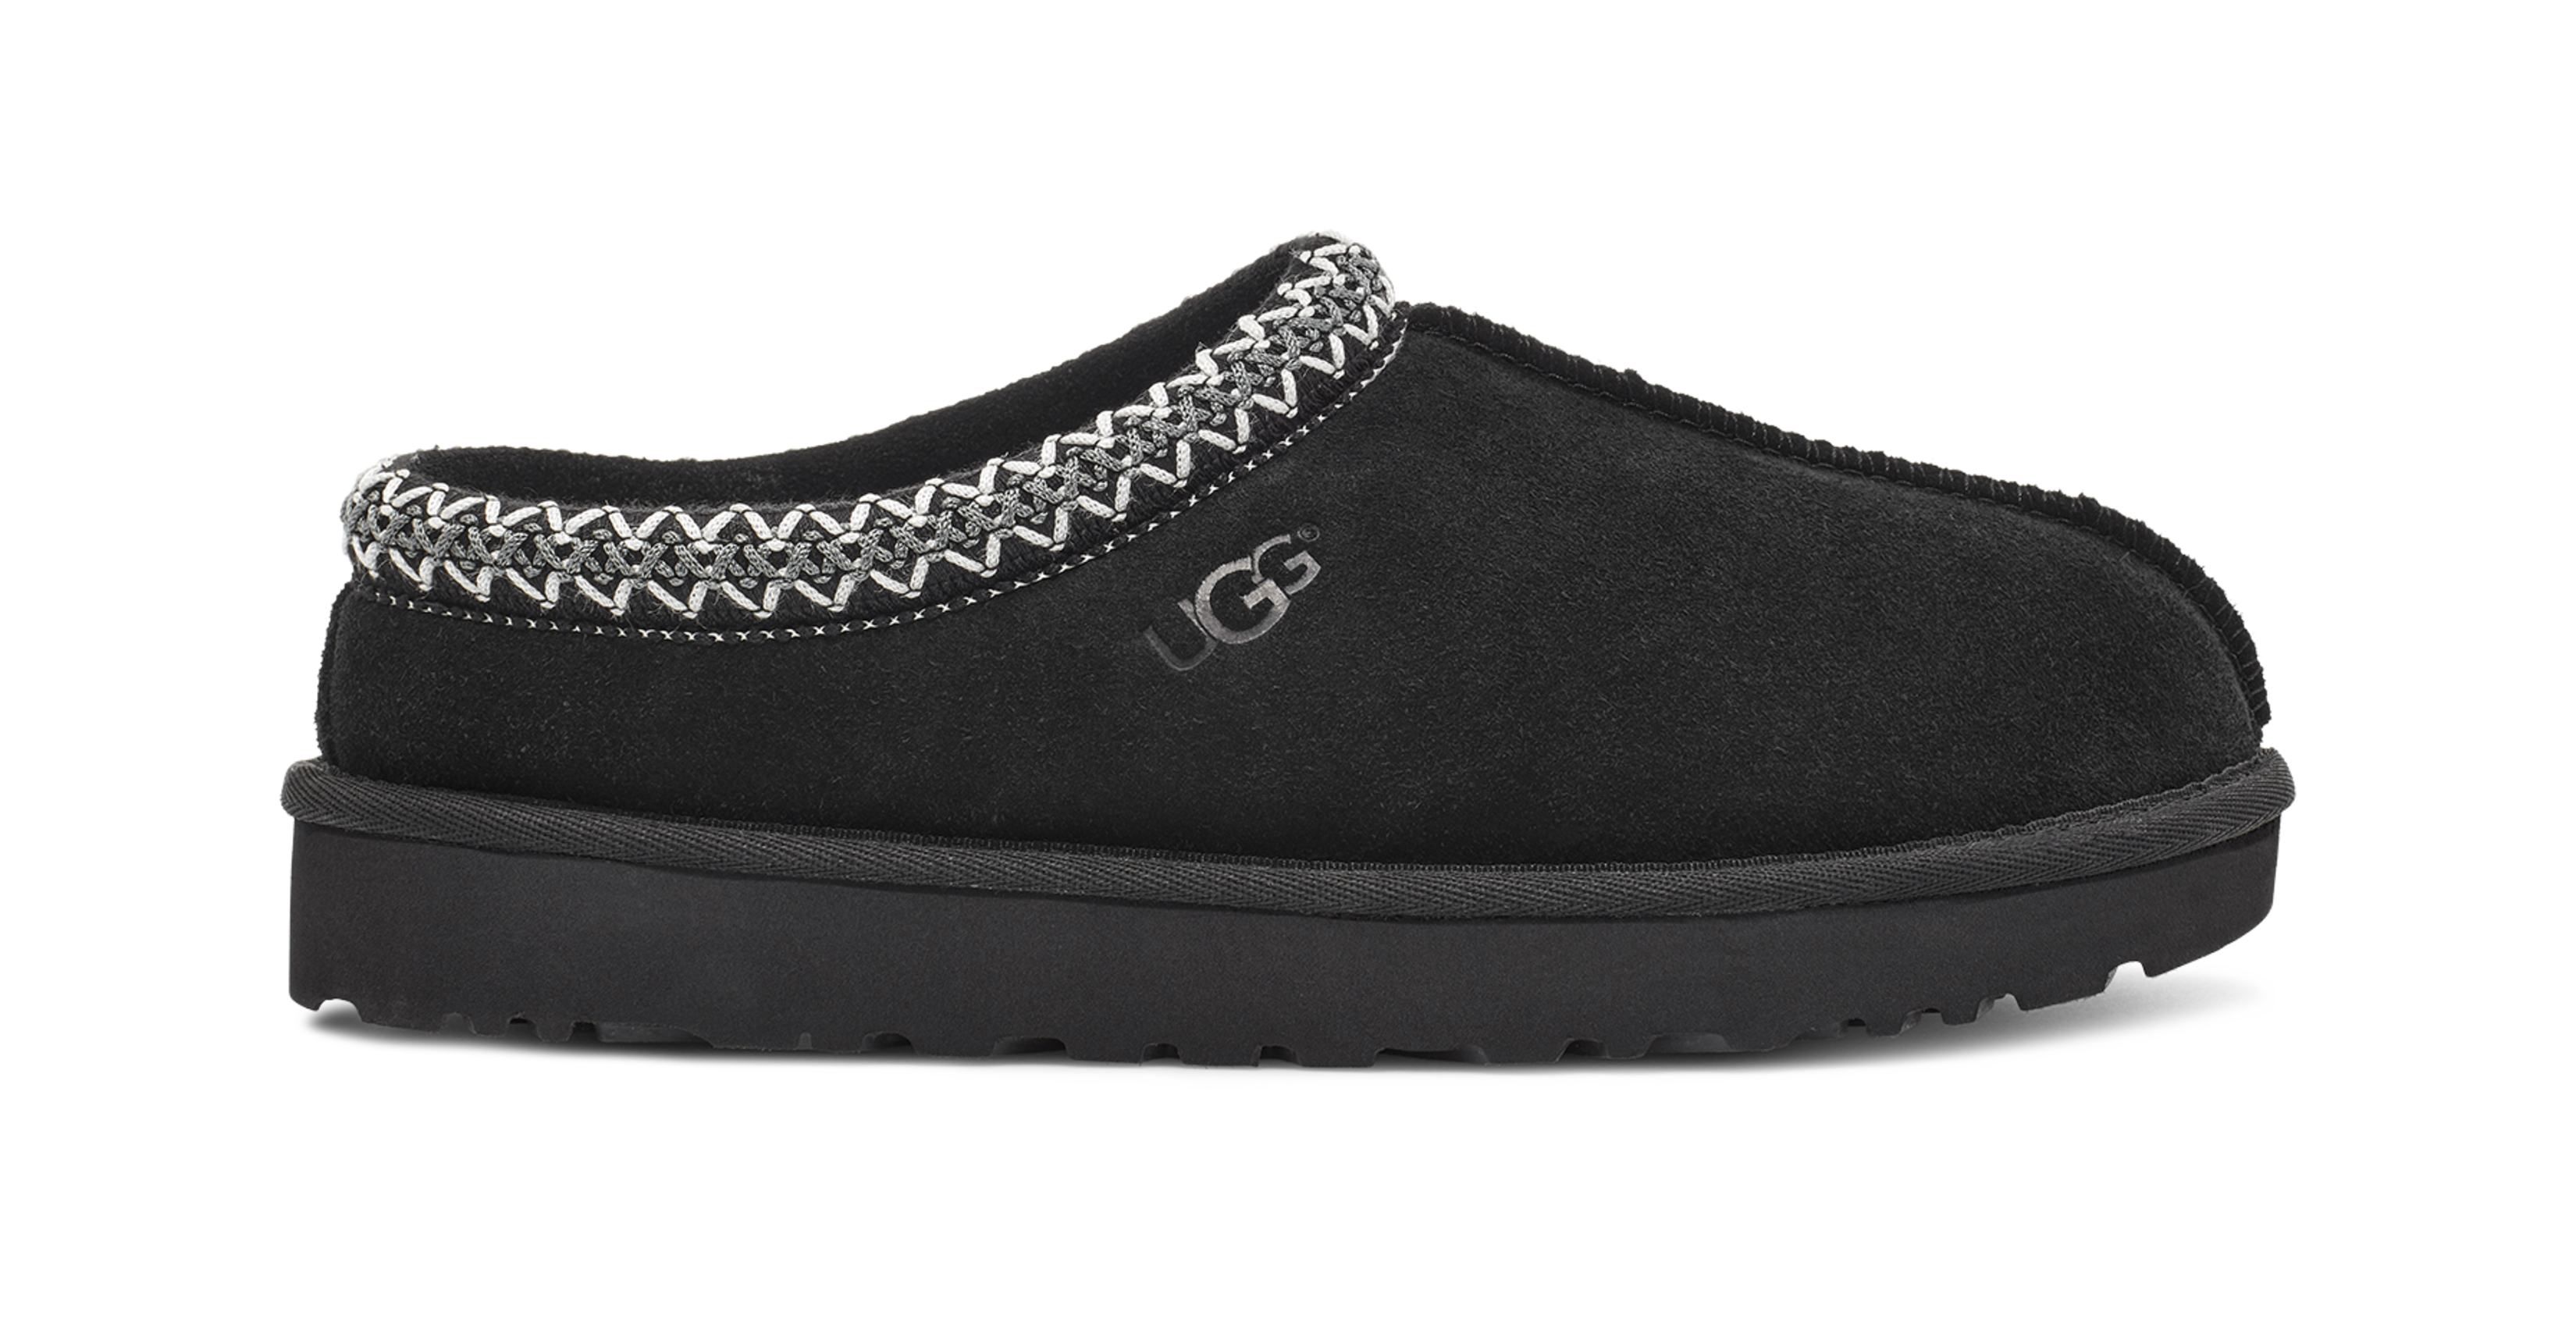 UGG® Tasman for Men | Casual House Shoes at UGG.com